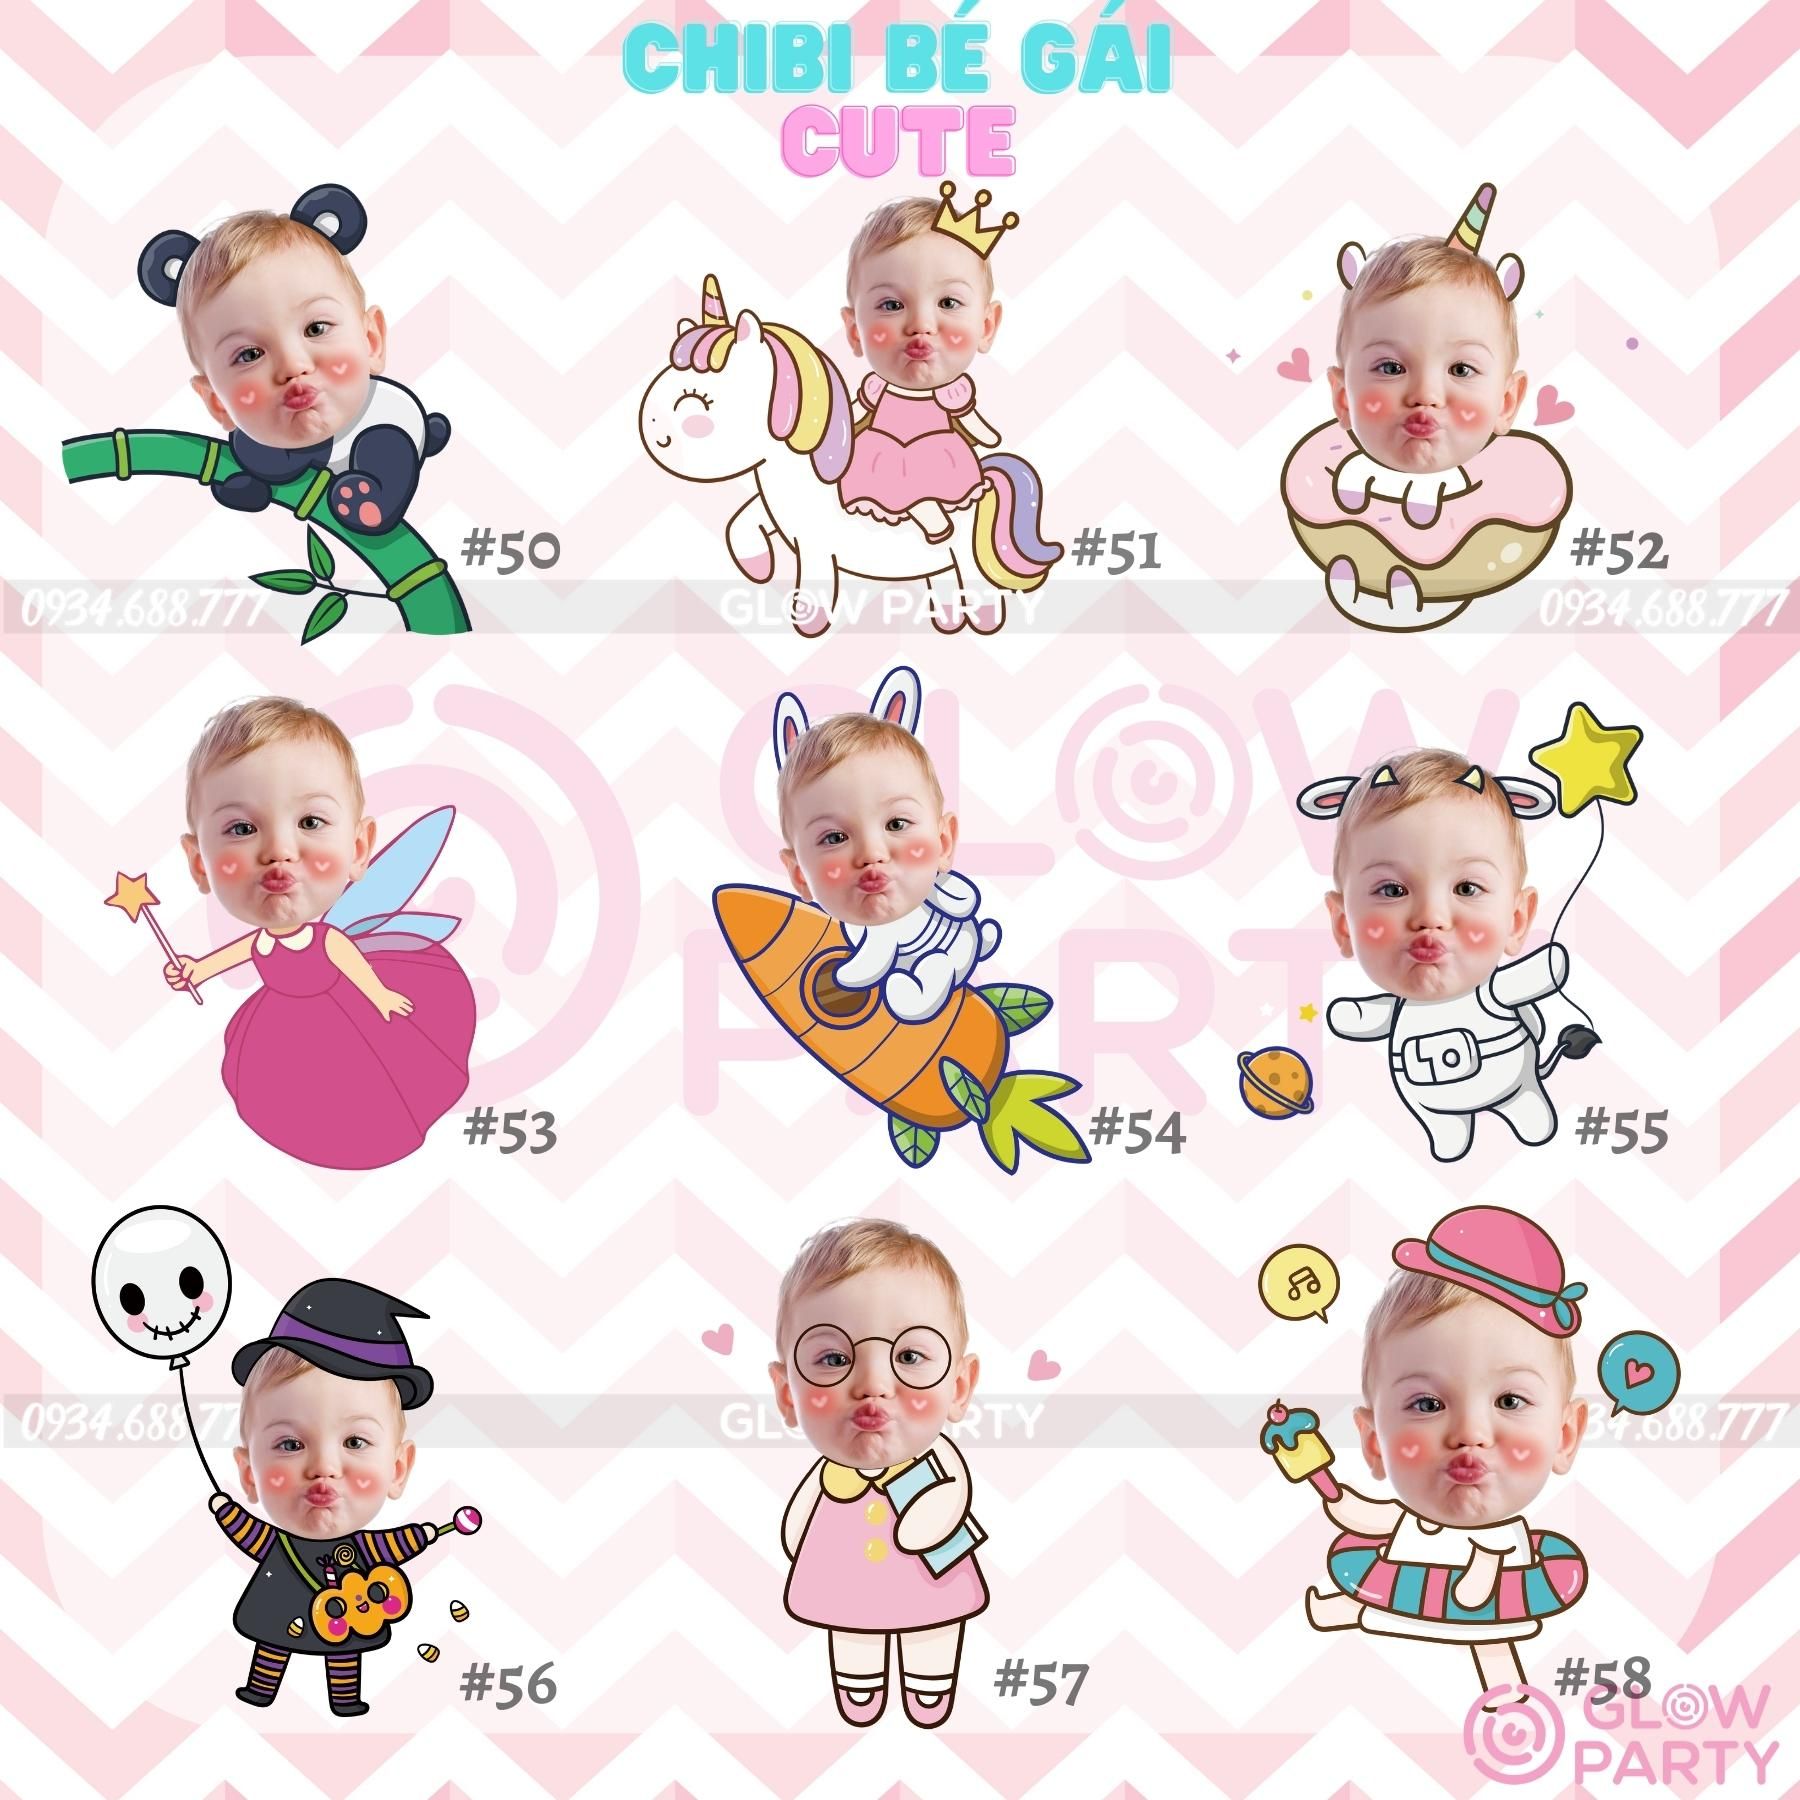 Chibi sinh nhật bé gái cute - Set 2 (chọn mẫu)